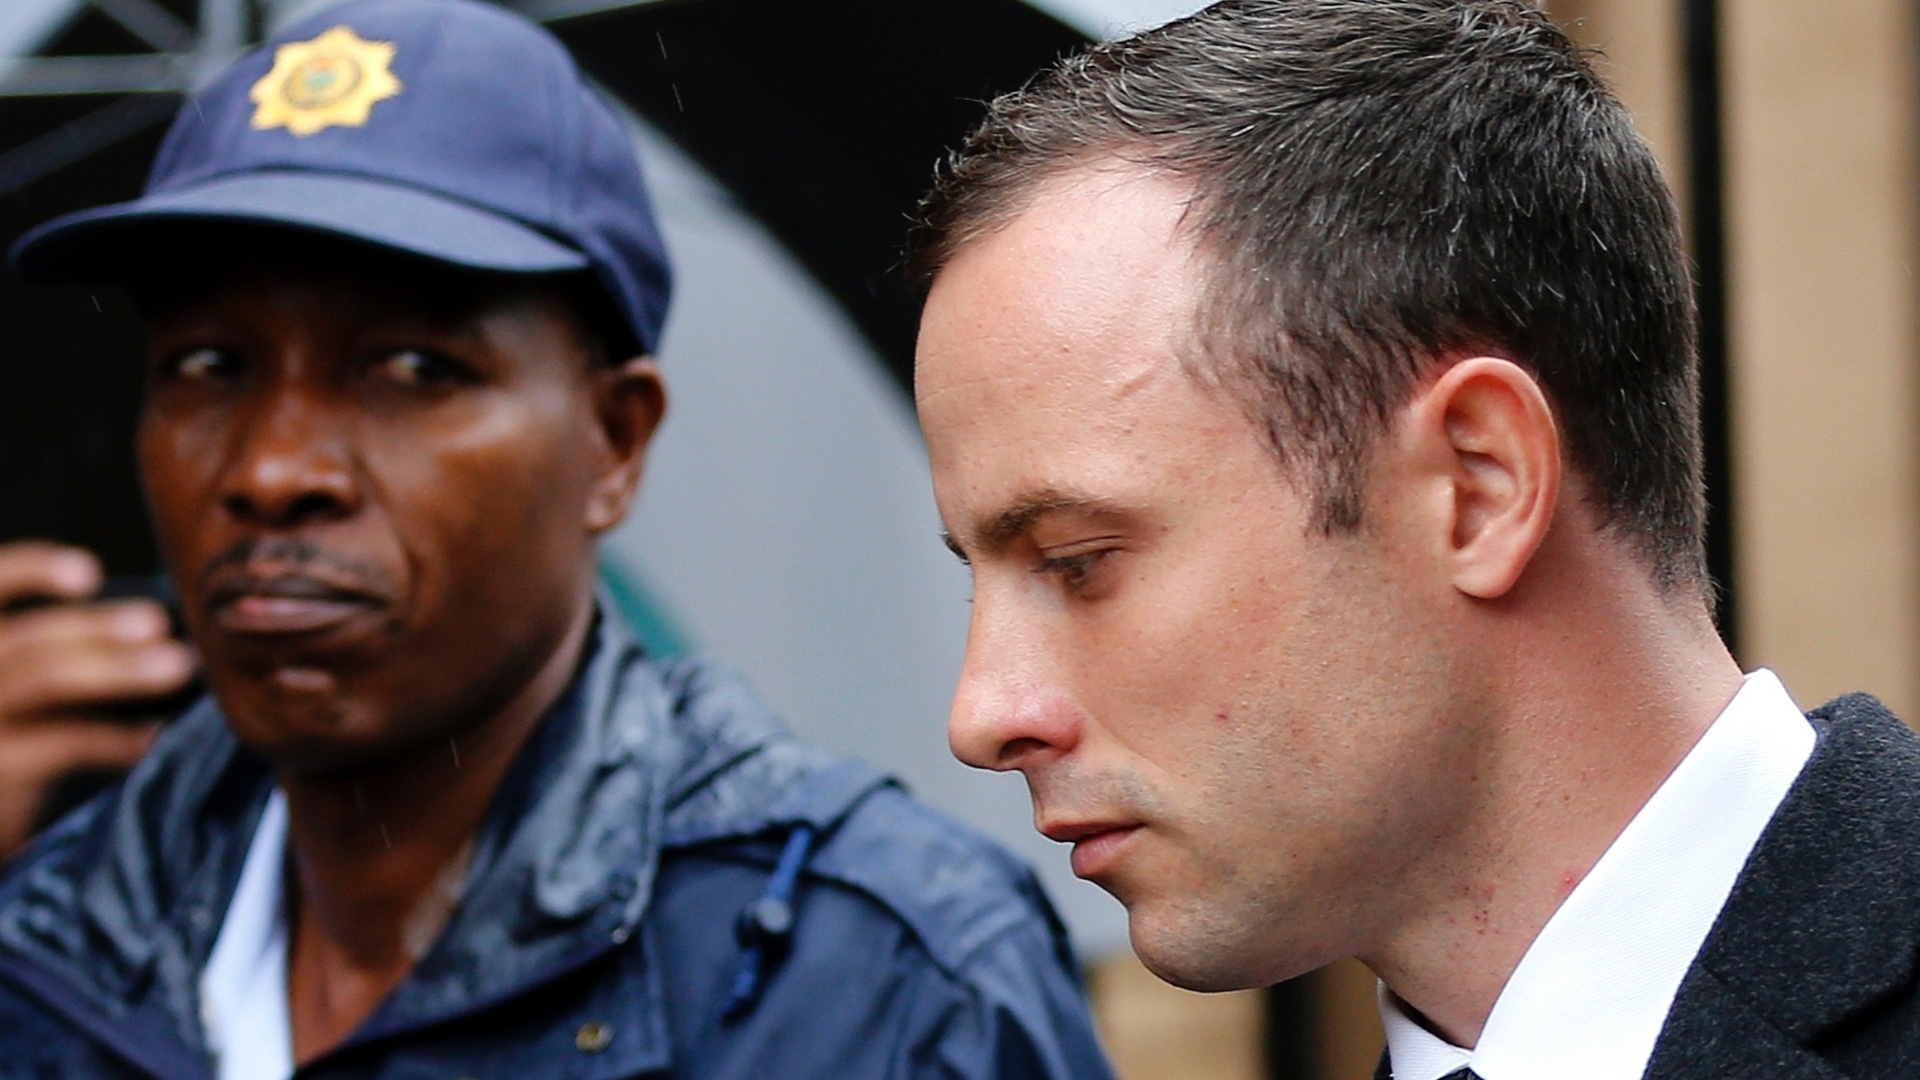 7.mar.2014 - Policial observa o atleta paraolímpico sul-africano Oscar Pistorius chegar ao tribunal em Pretória para o quinto dia de seu julgamento pelo assassinato de sua namorada, Reeva Steenkamp